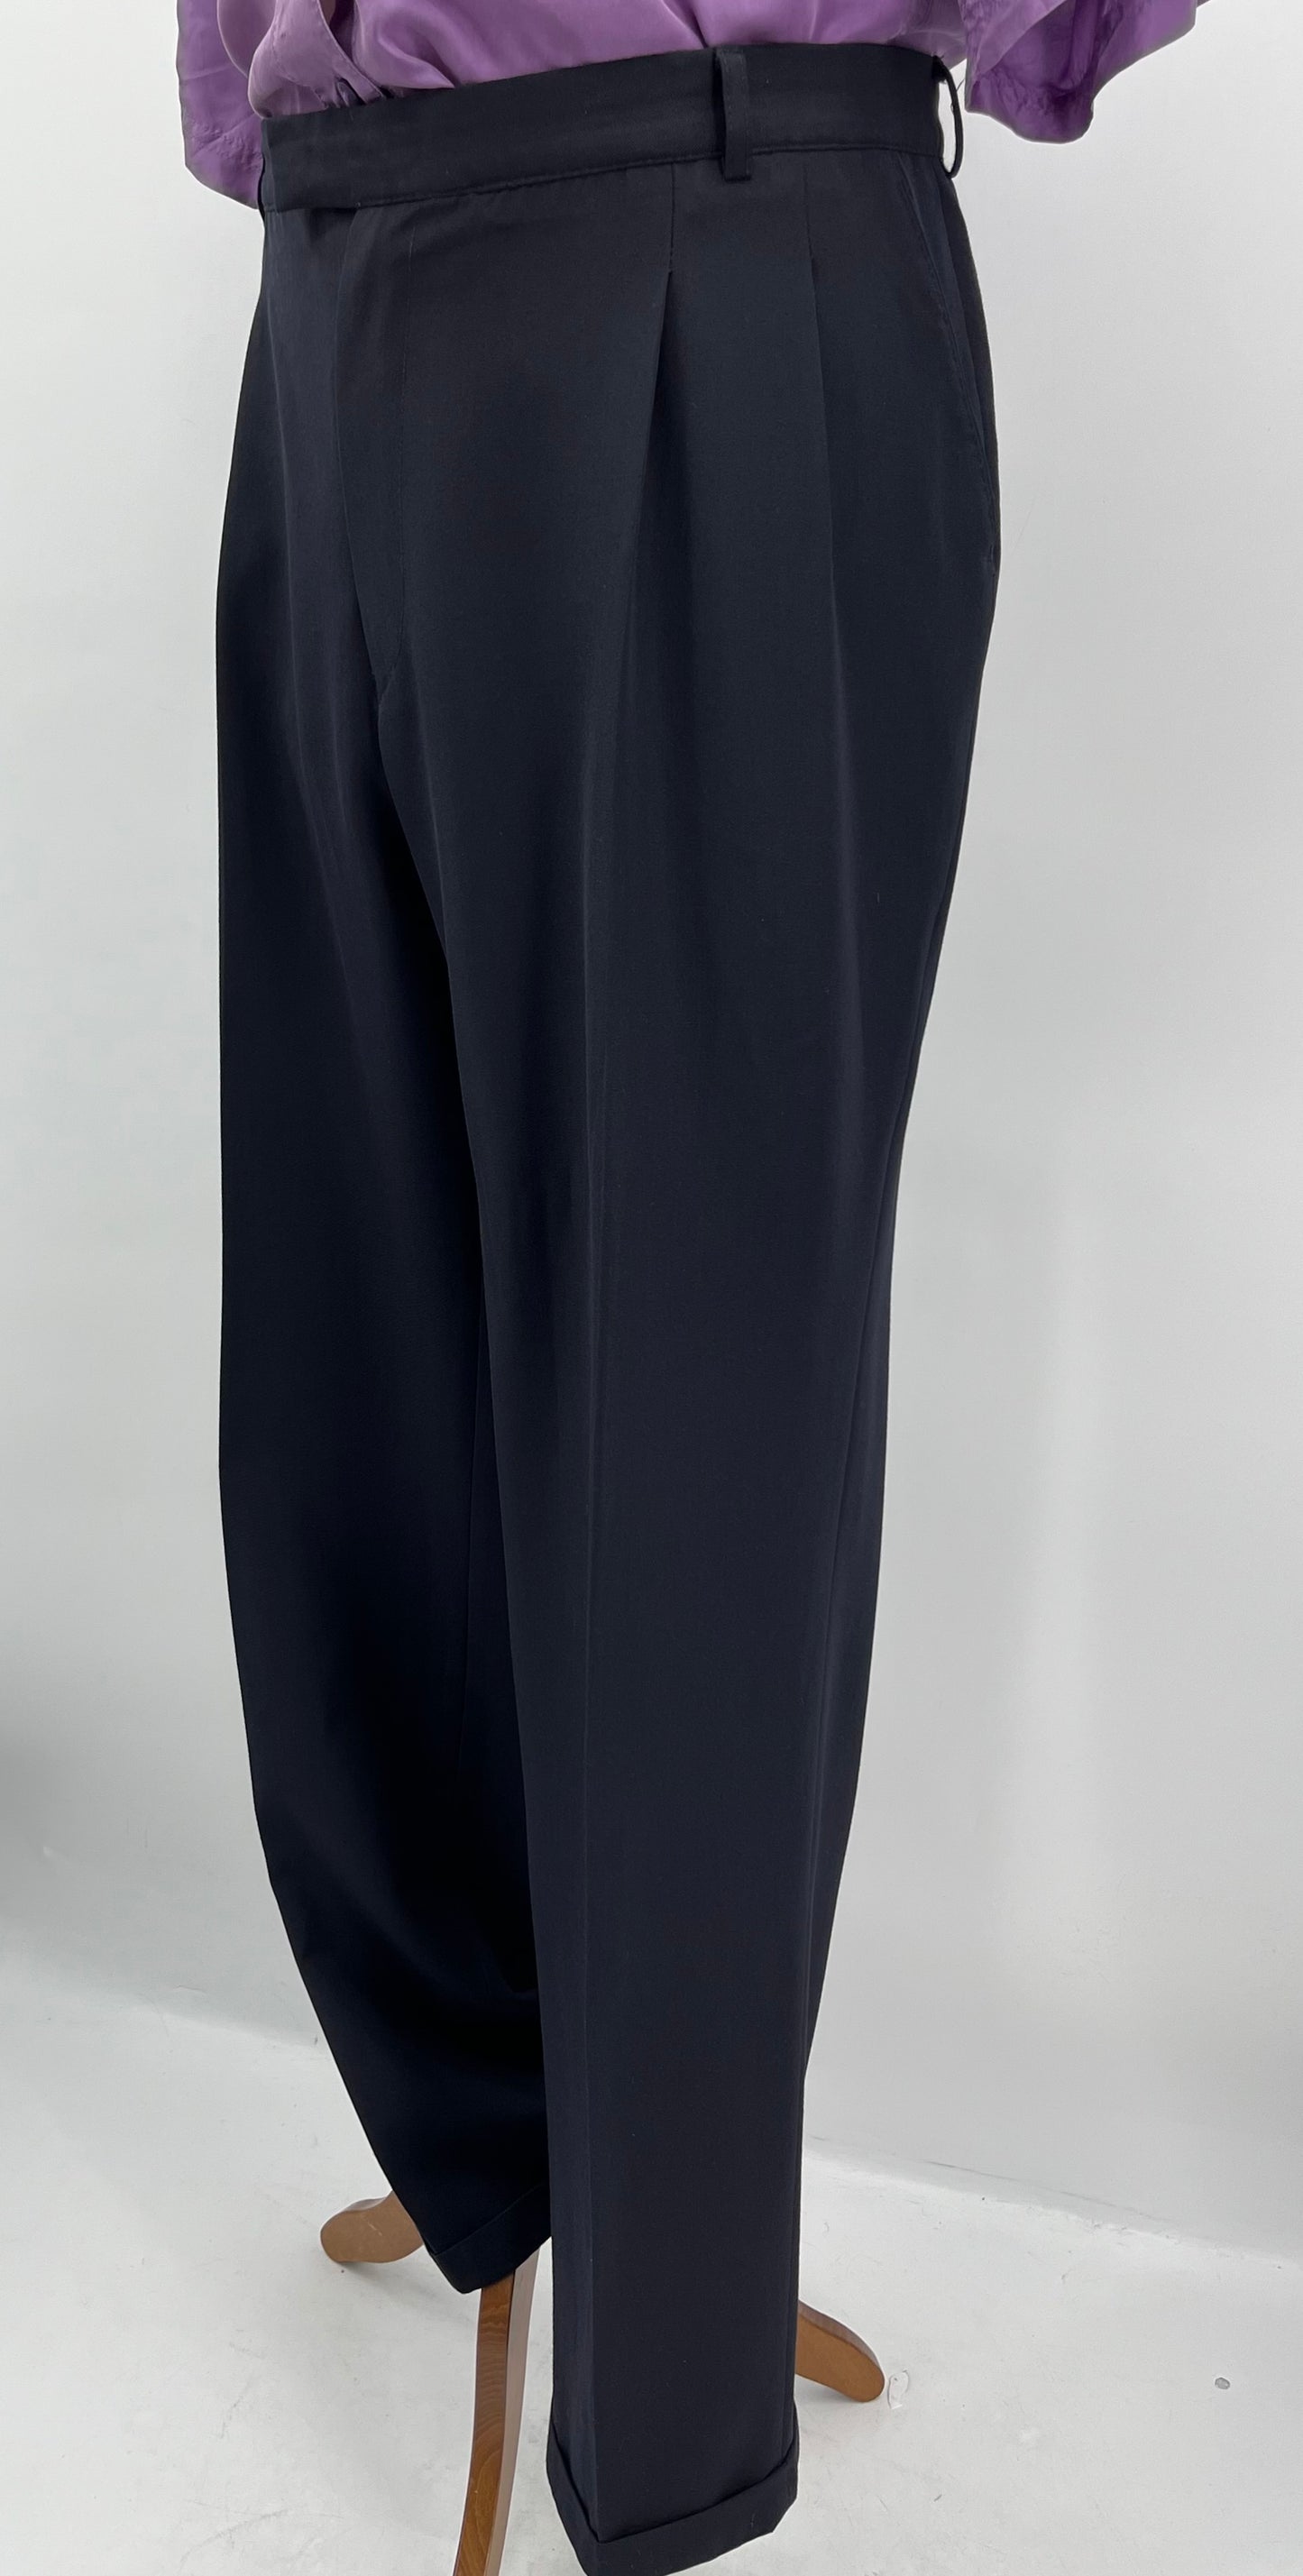 Lammerman, tummansiniset miesten housut, 80-90-luku, vyöt.ymp. 108cm